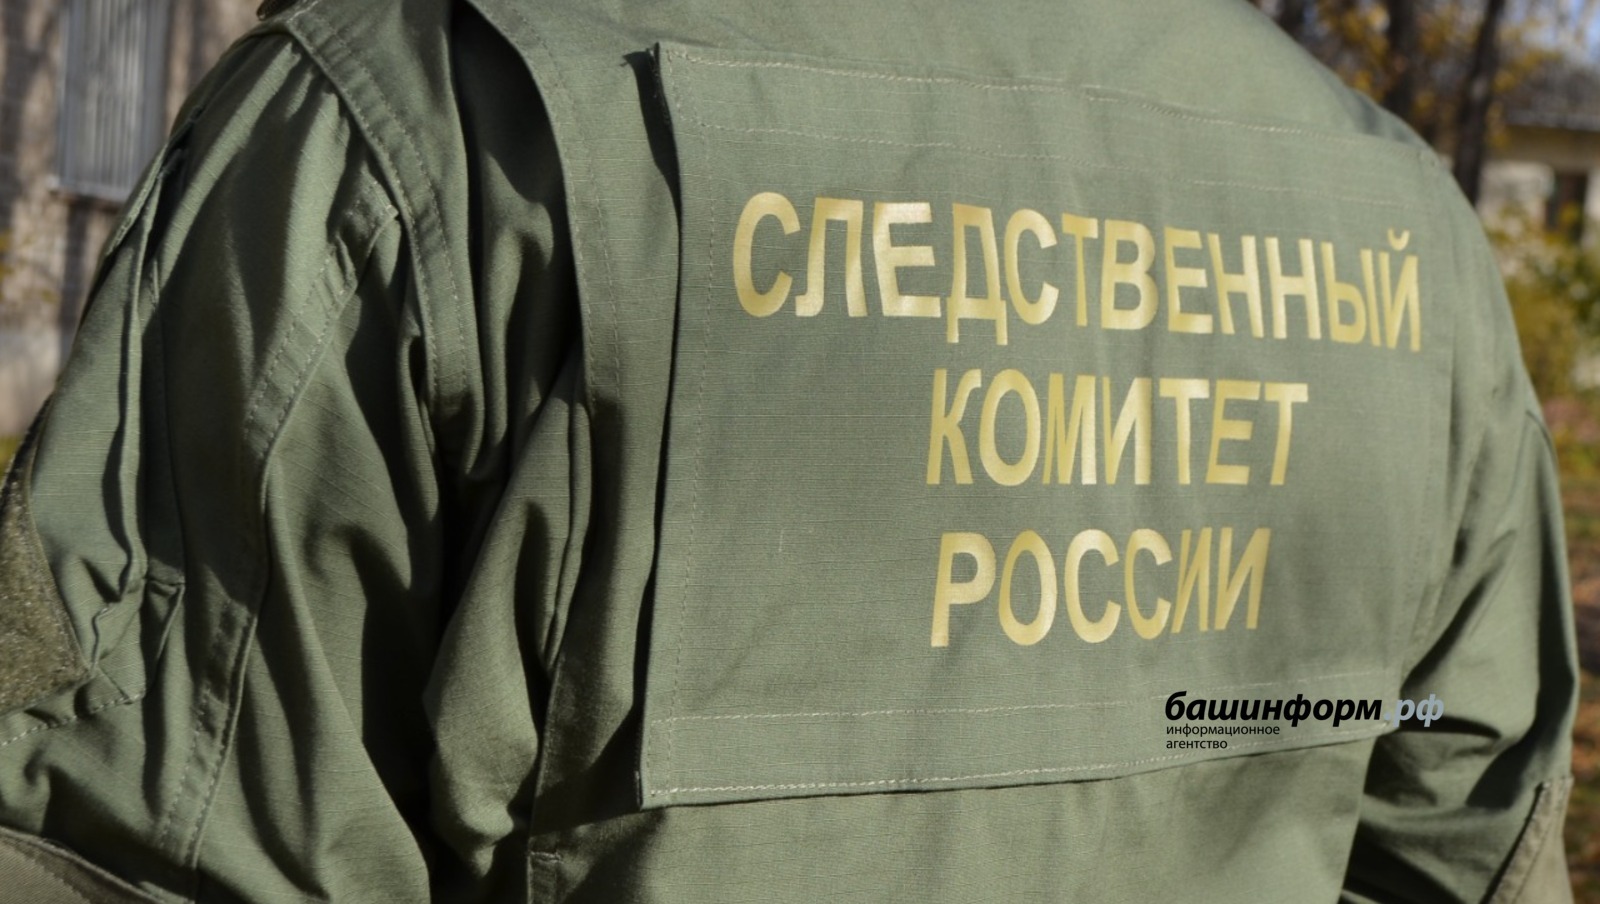 Инцидент в кадетском корпусе в Башкирии взят на контроль руководителем СКР